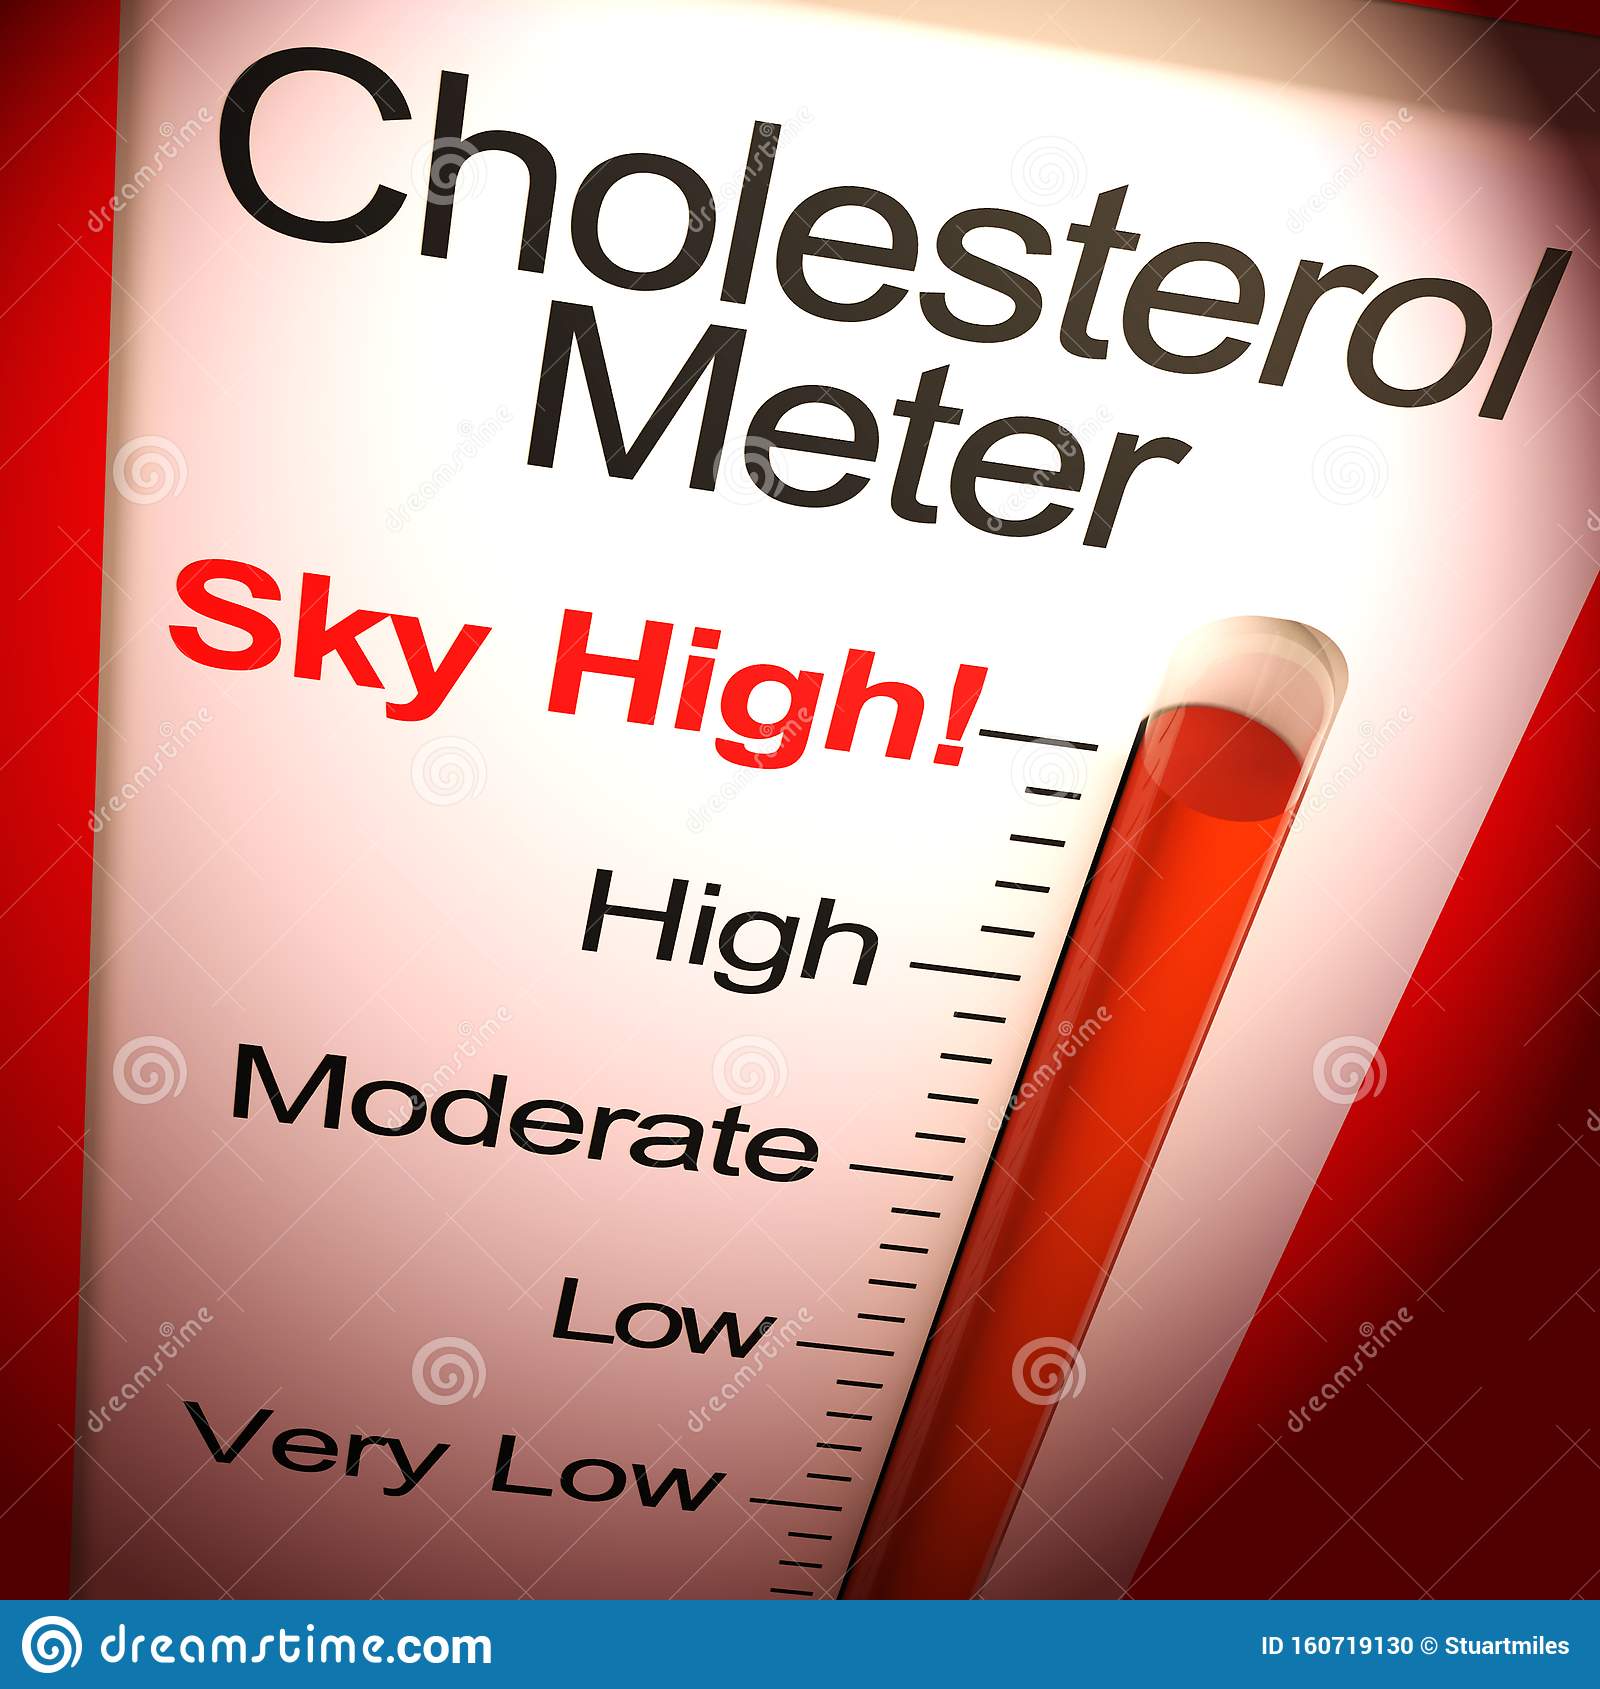 Cholesterol Meter Sky